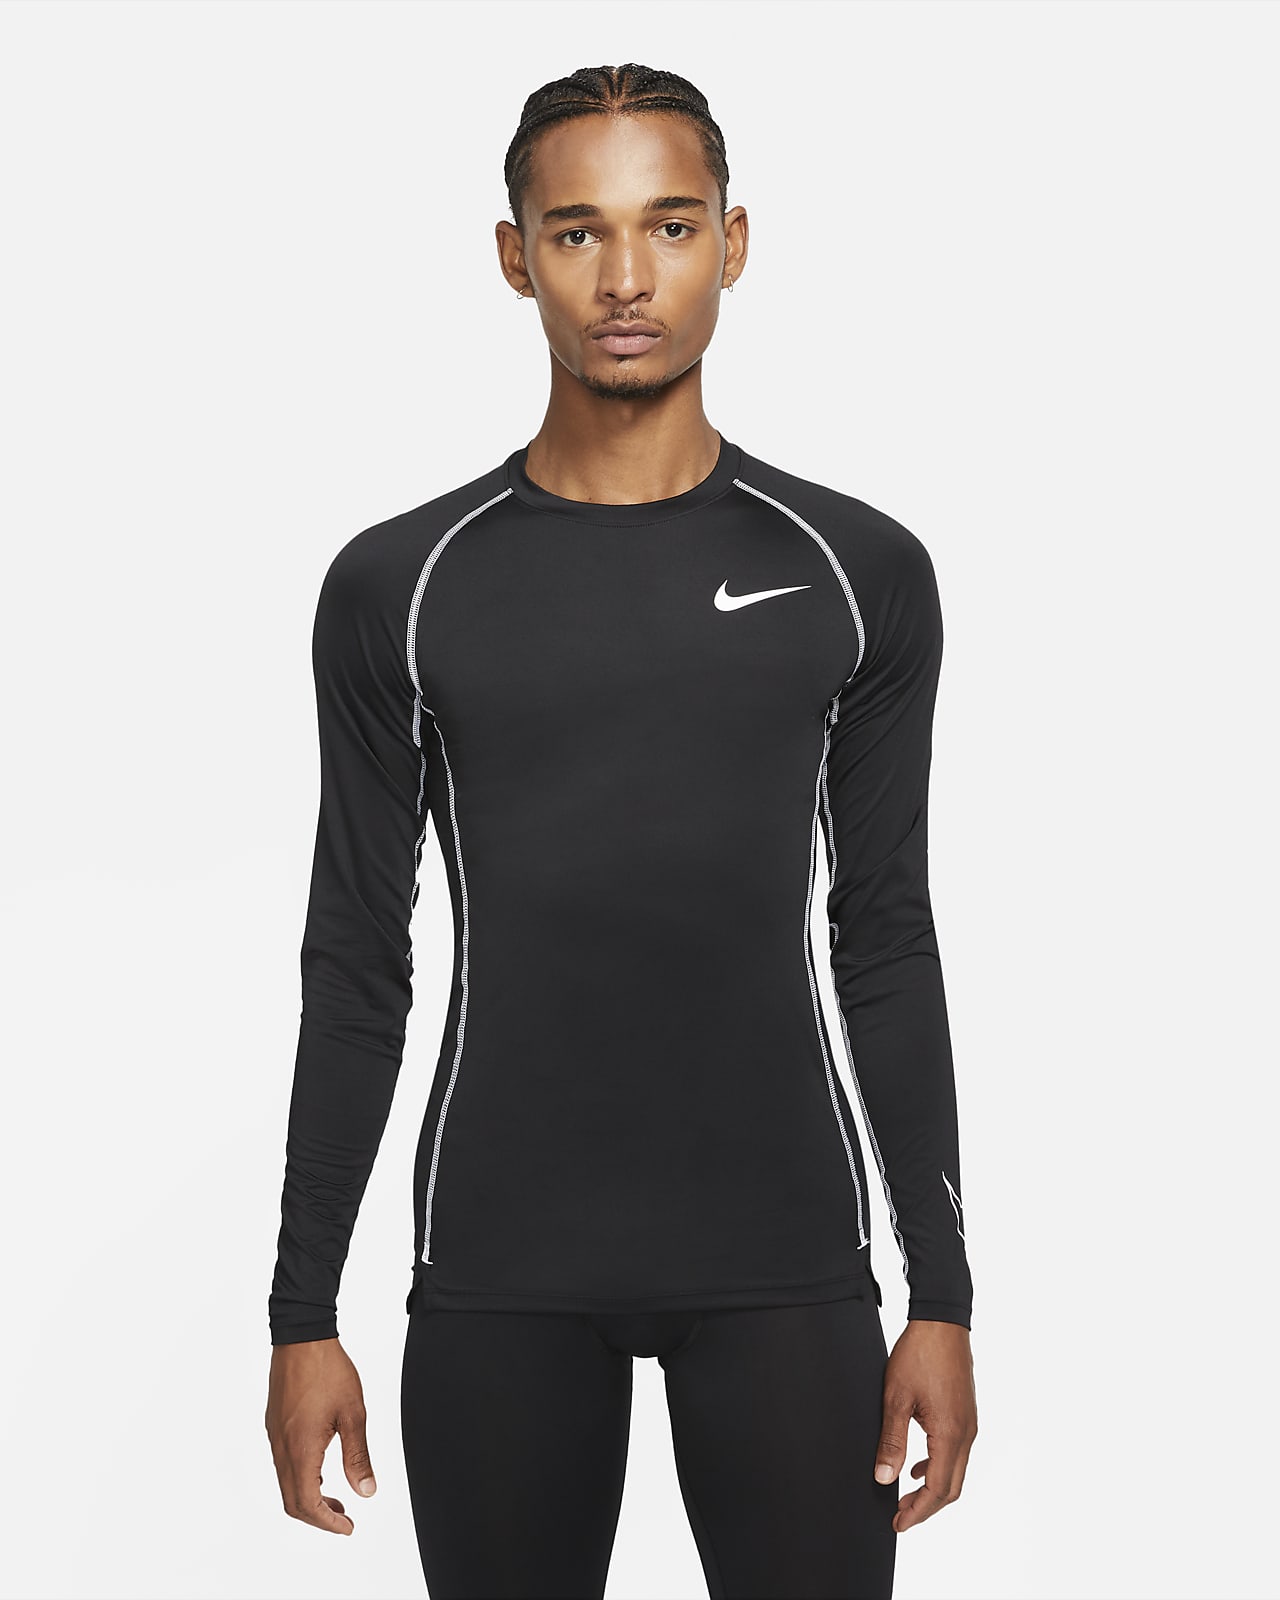 Rebaja Punto muerto abrazo Nike Pro Dri-FIT Men's Tight-Fit Long-Sleeve Top. Nike BG